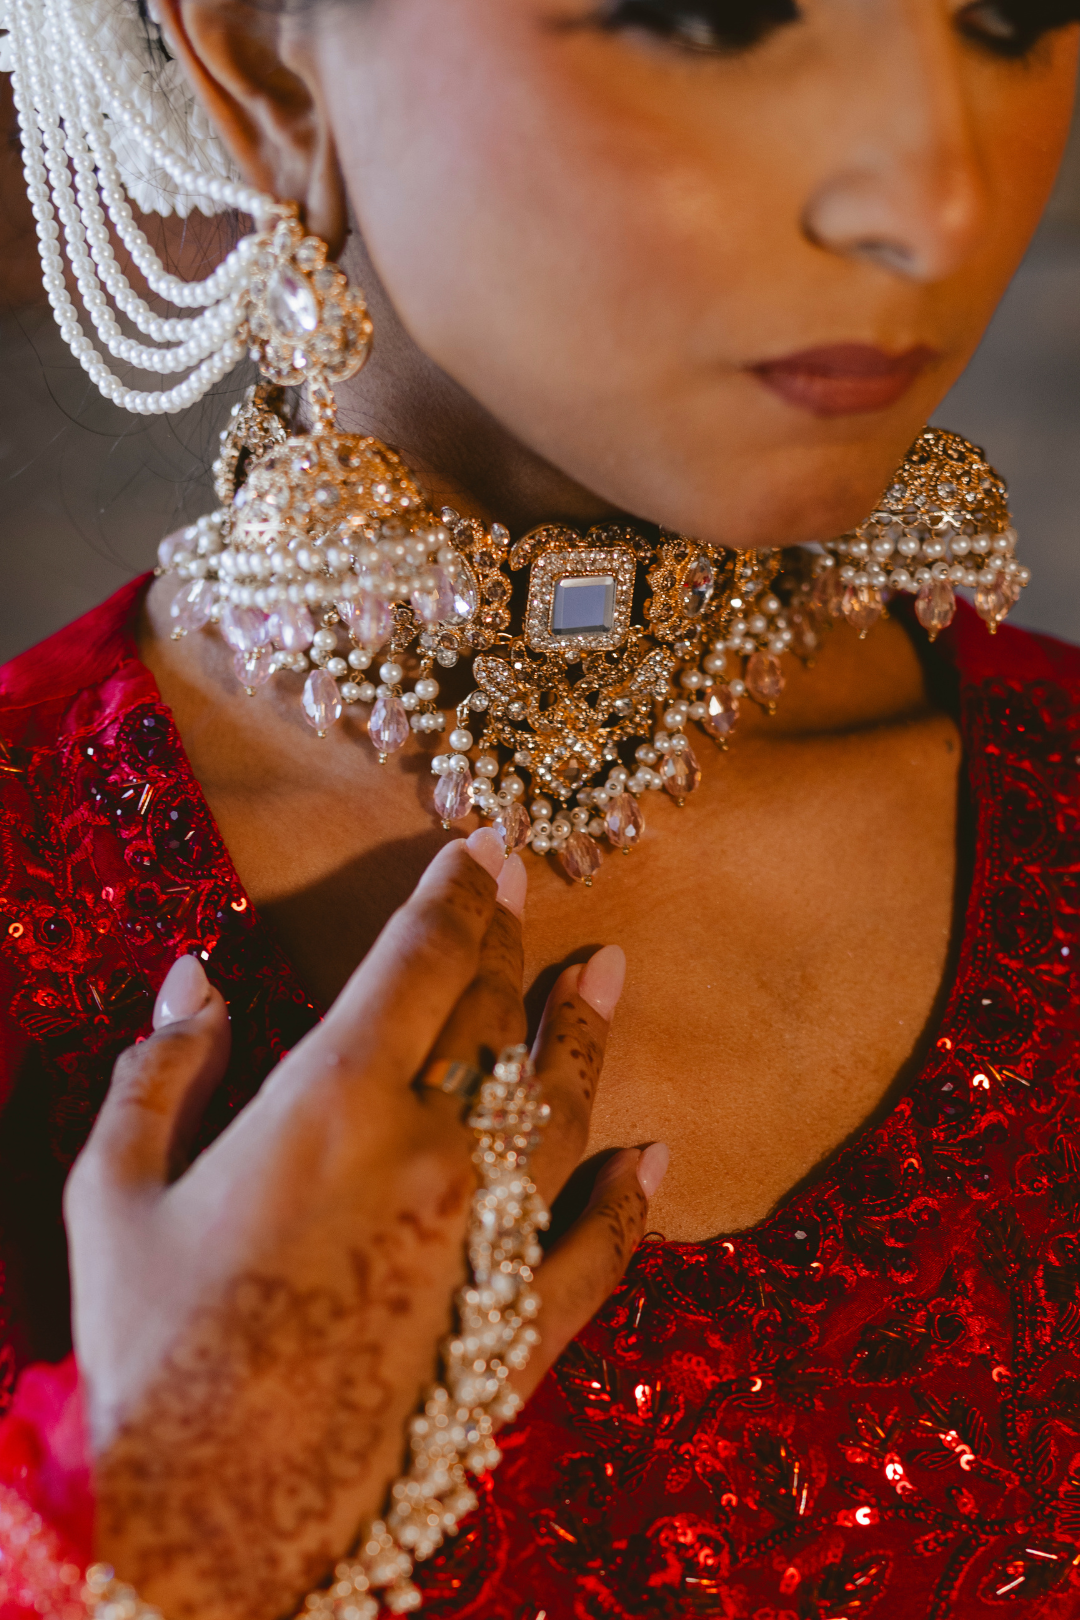 Sareena – Spiegelverziertes Halsband-Halsketten-Set